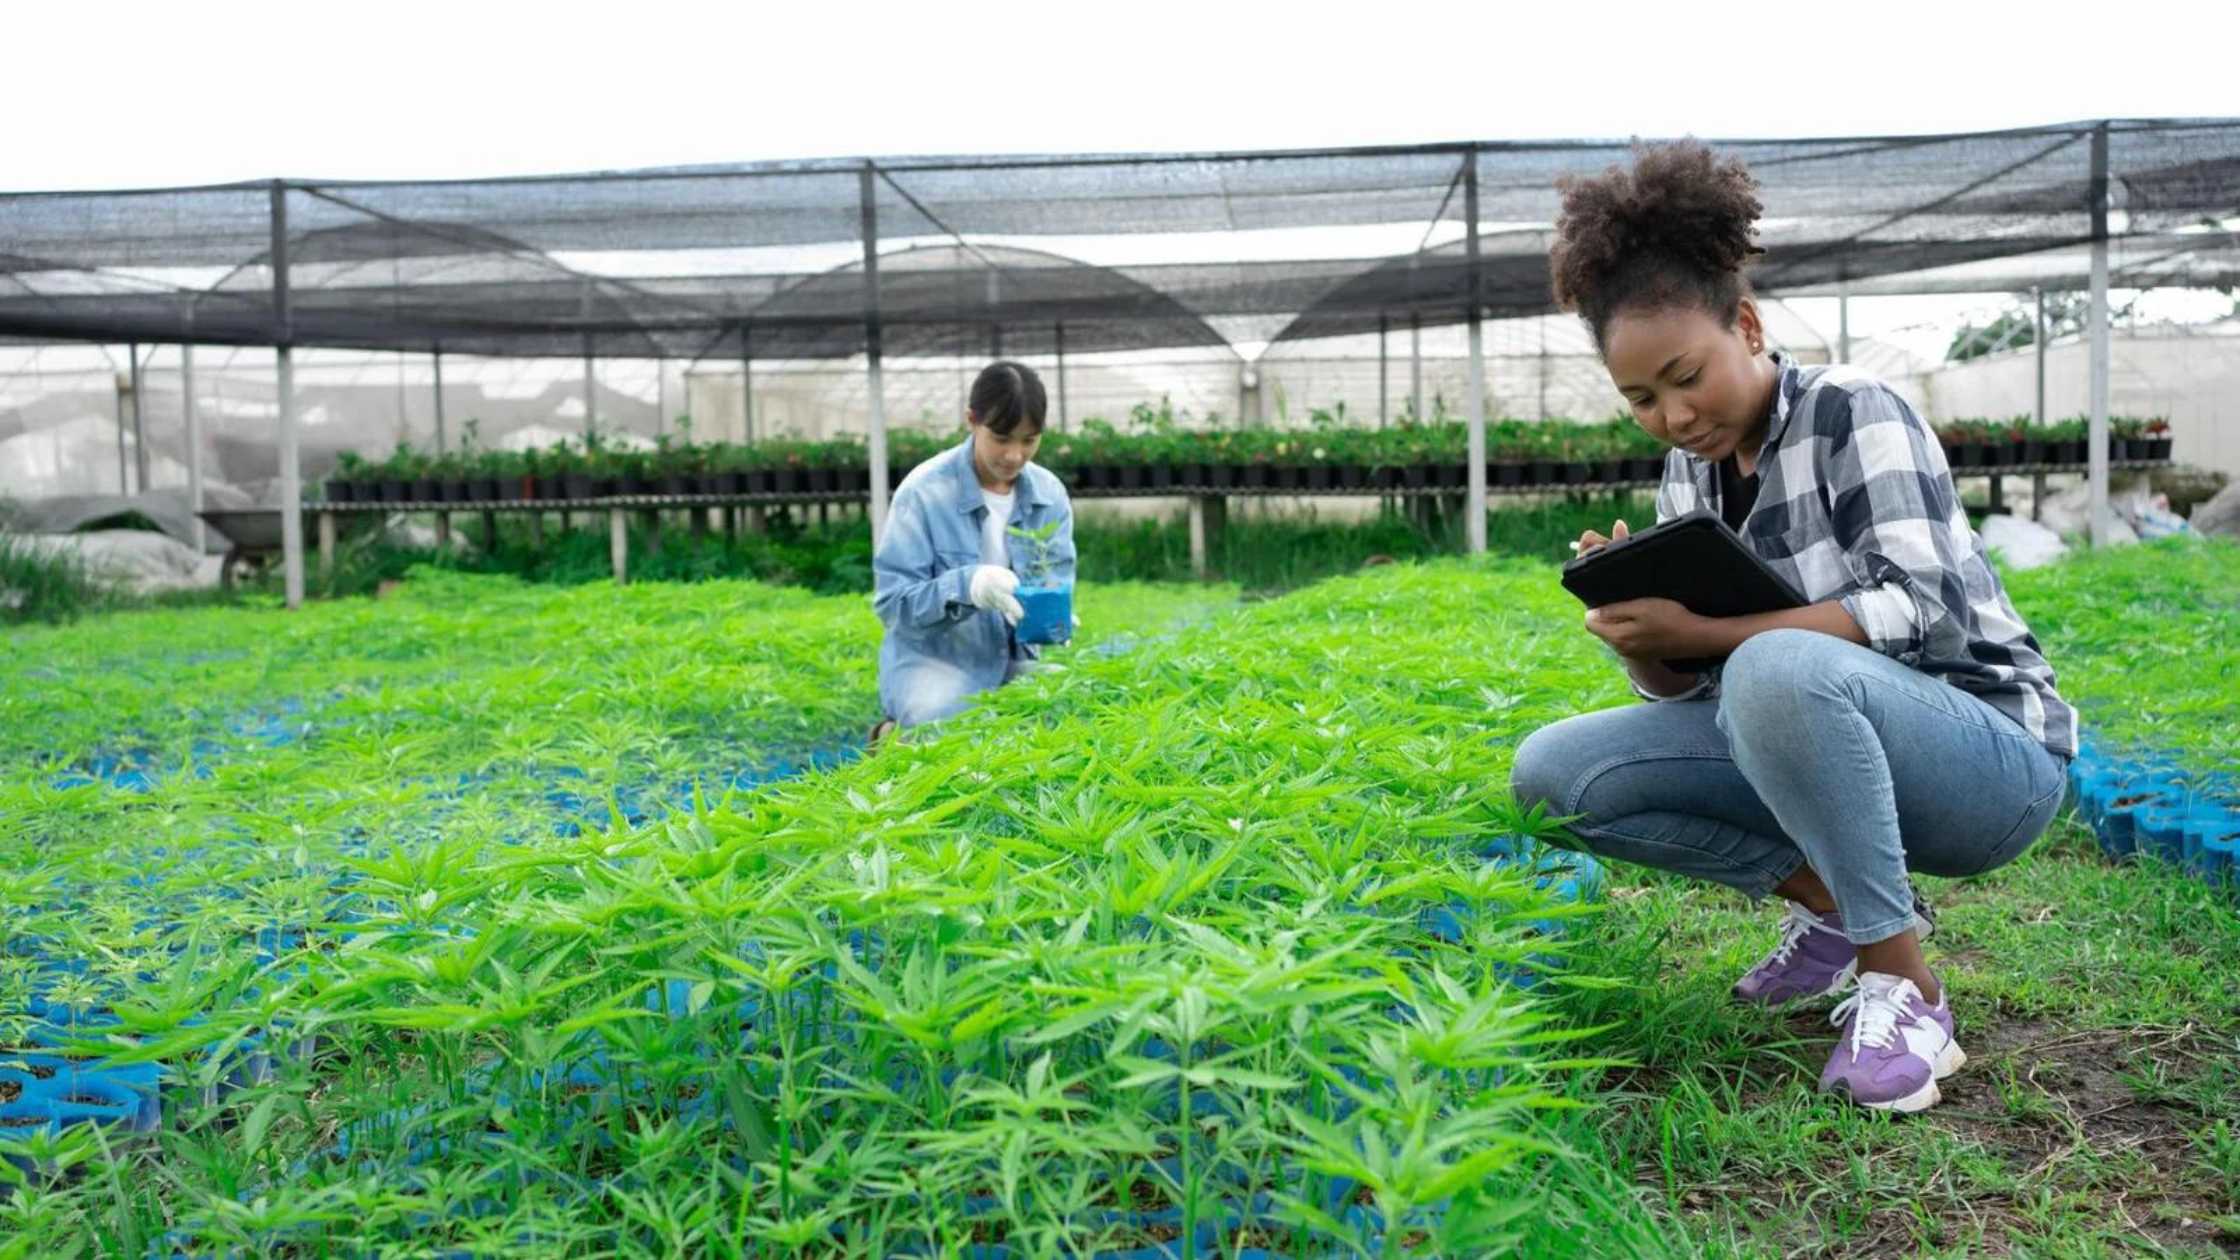 Study for a Cannabis Farming Career